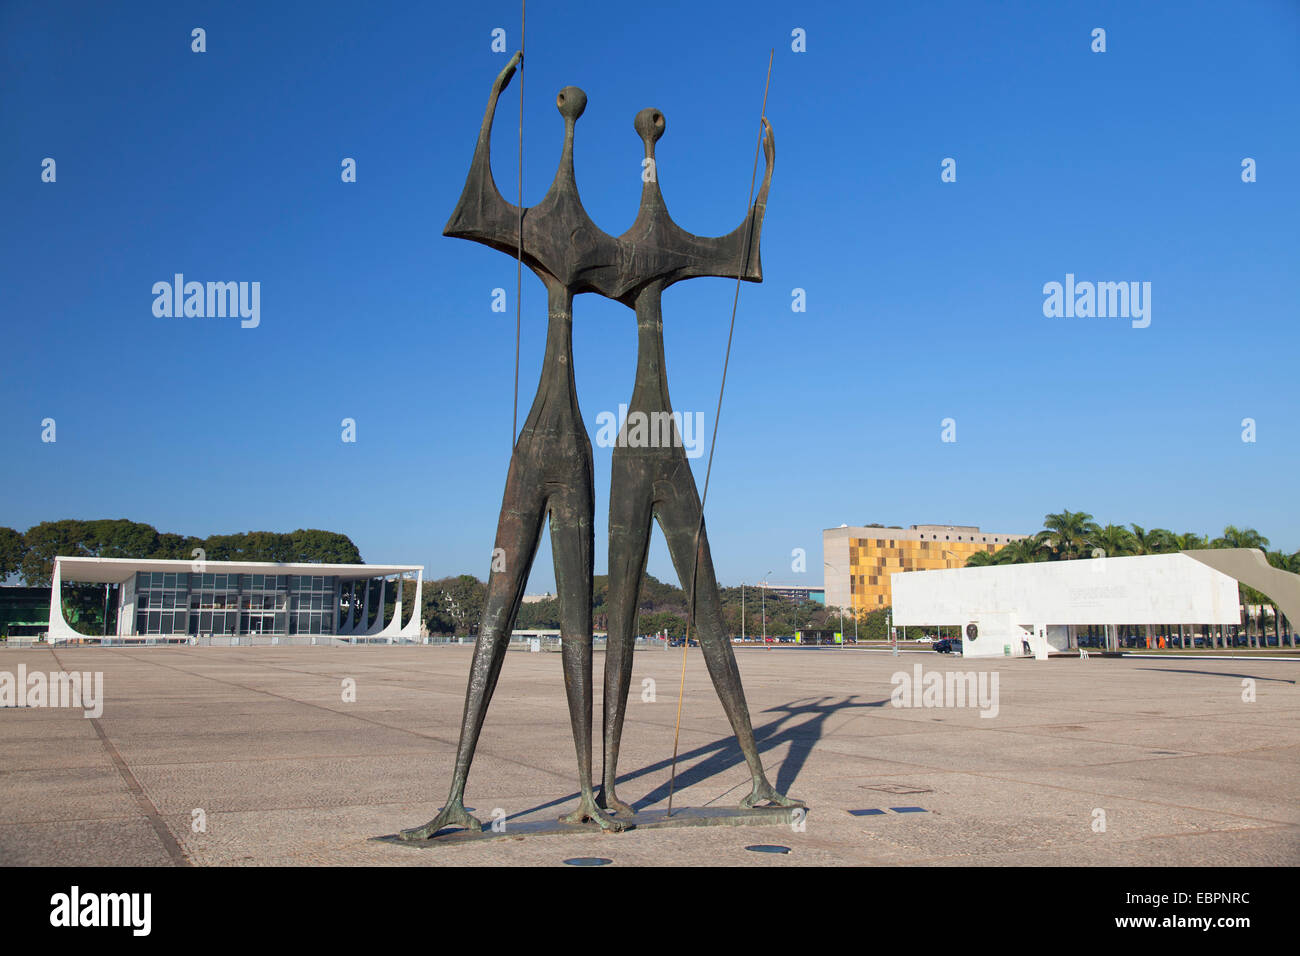 Tribunal Suprême Fédéral, dois Candangos sculpture, trois pouvoirs Square, Brasilia, District fédéral, au Brésil, en Amérique du Sud Banque D'Images